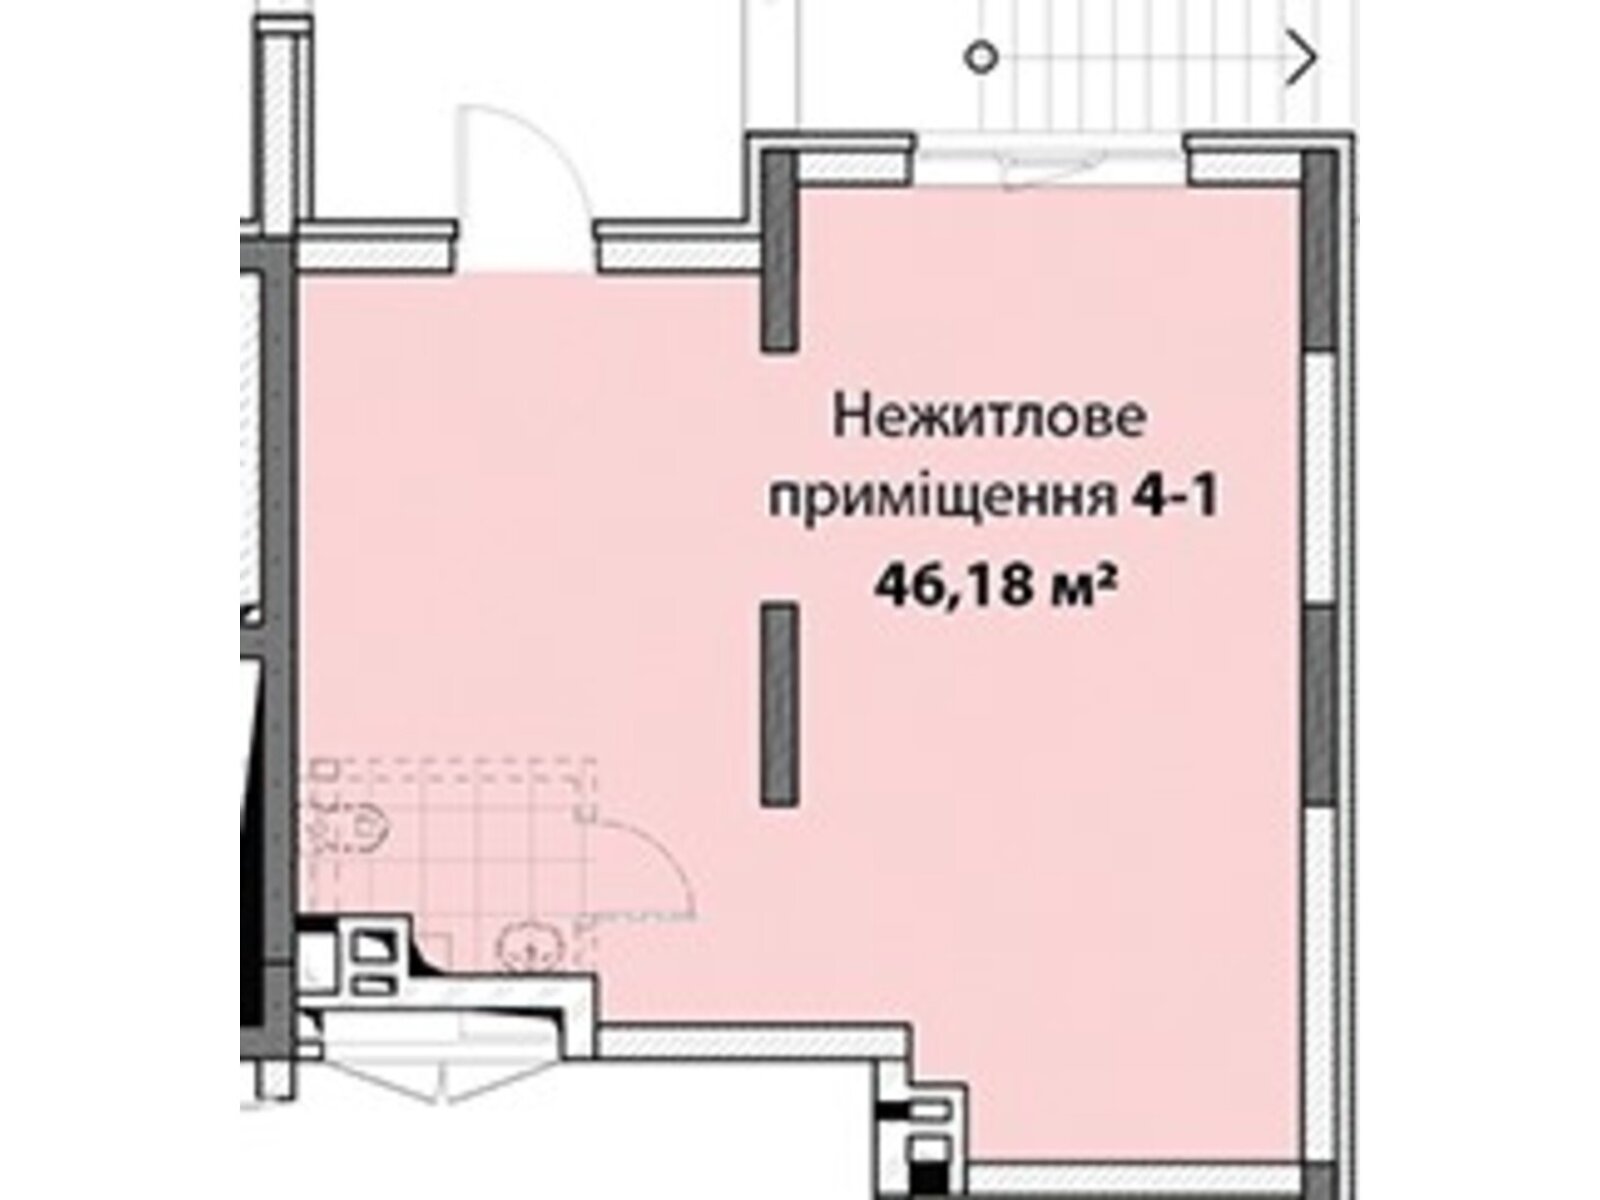 Офисное помещение на 46.18 кв.м. в Киеве фото 1